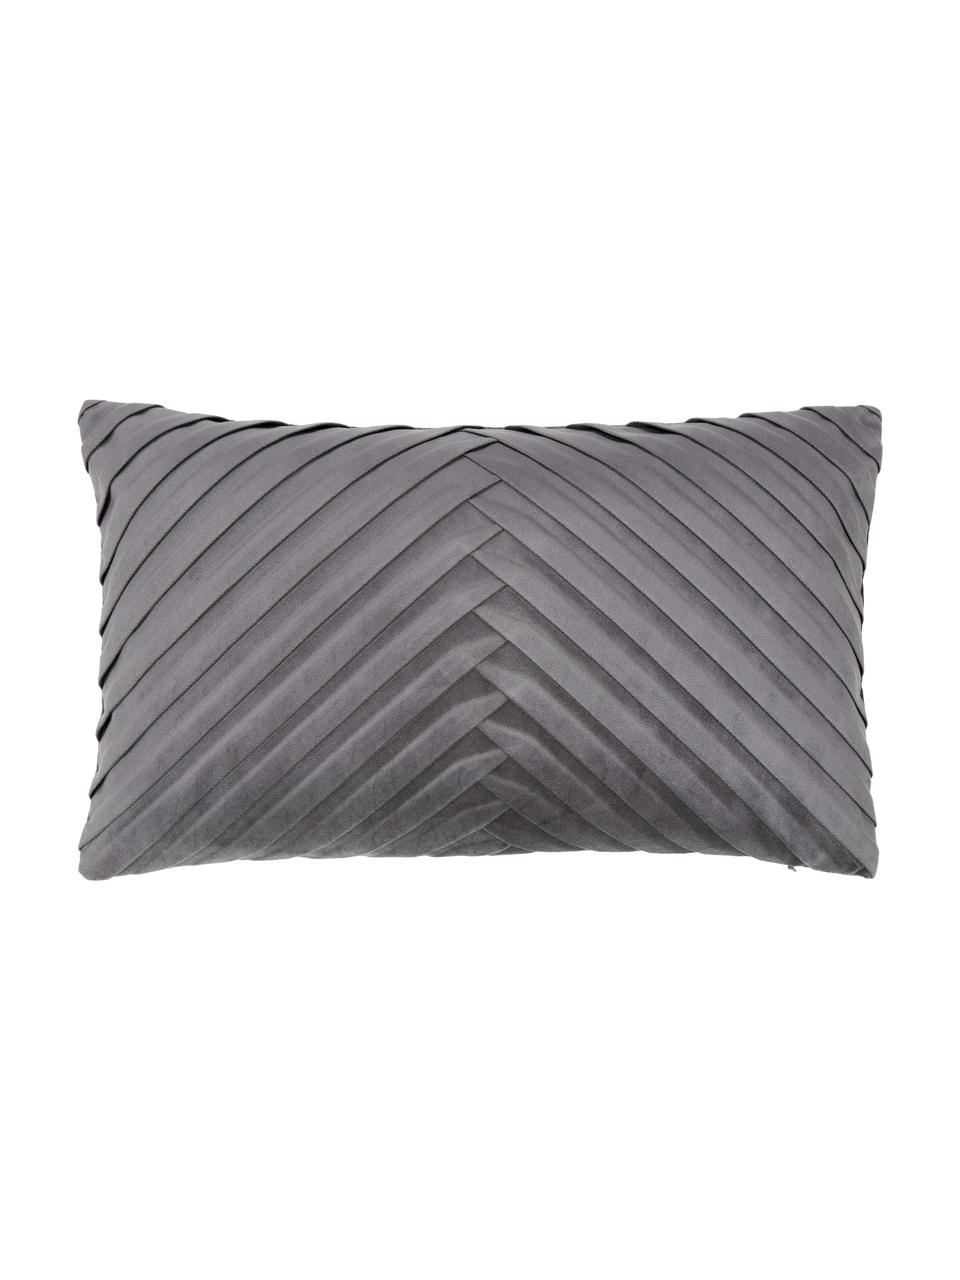 Fluwelen kussenhoes Lucie in donkergrijs met structuur-oppervlak, 100% fluweel (polyester), Grijs, B 30 x L 50 cm